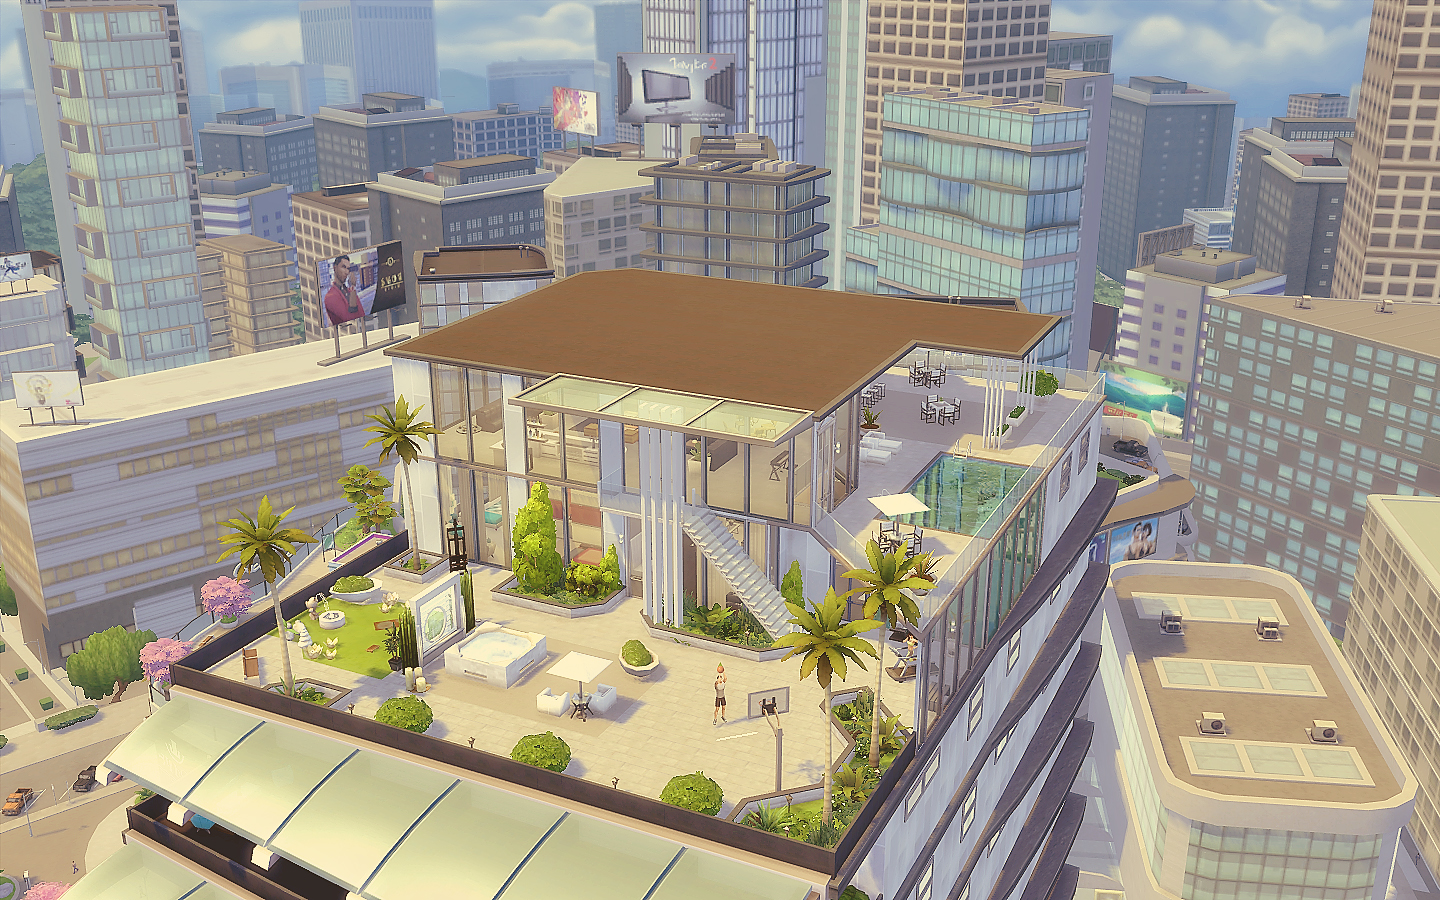 The Sims 4 terá expansão com prédios e aluguel